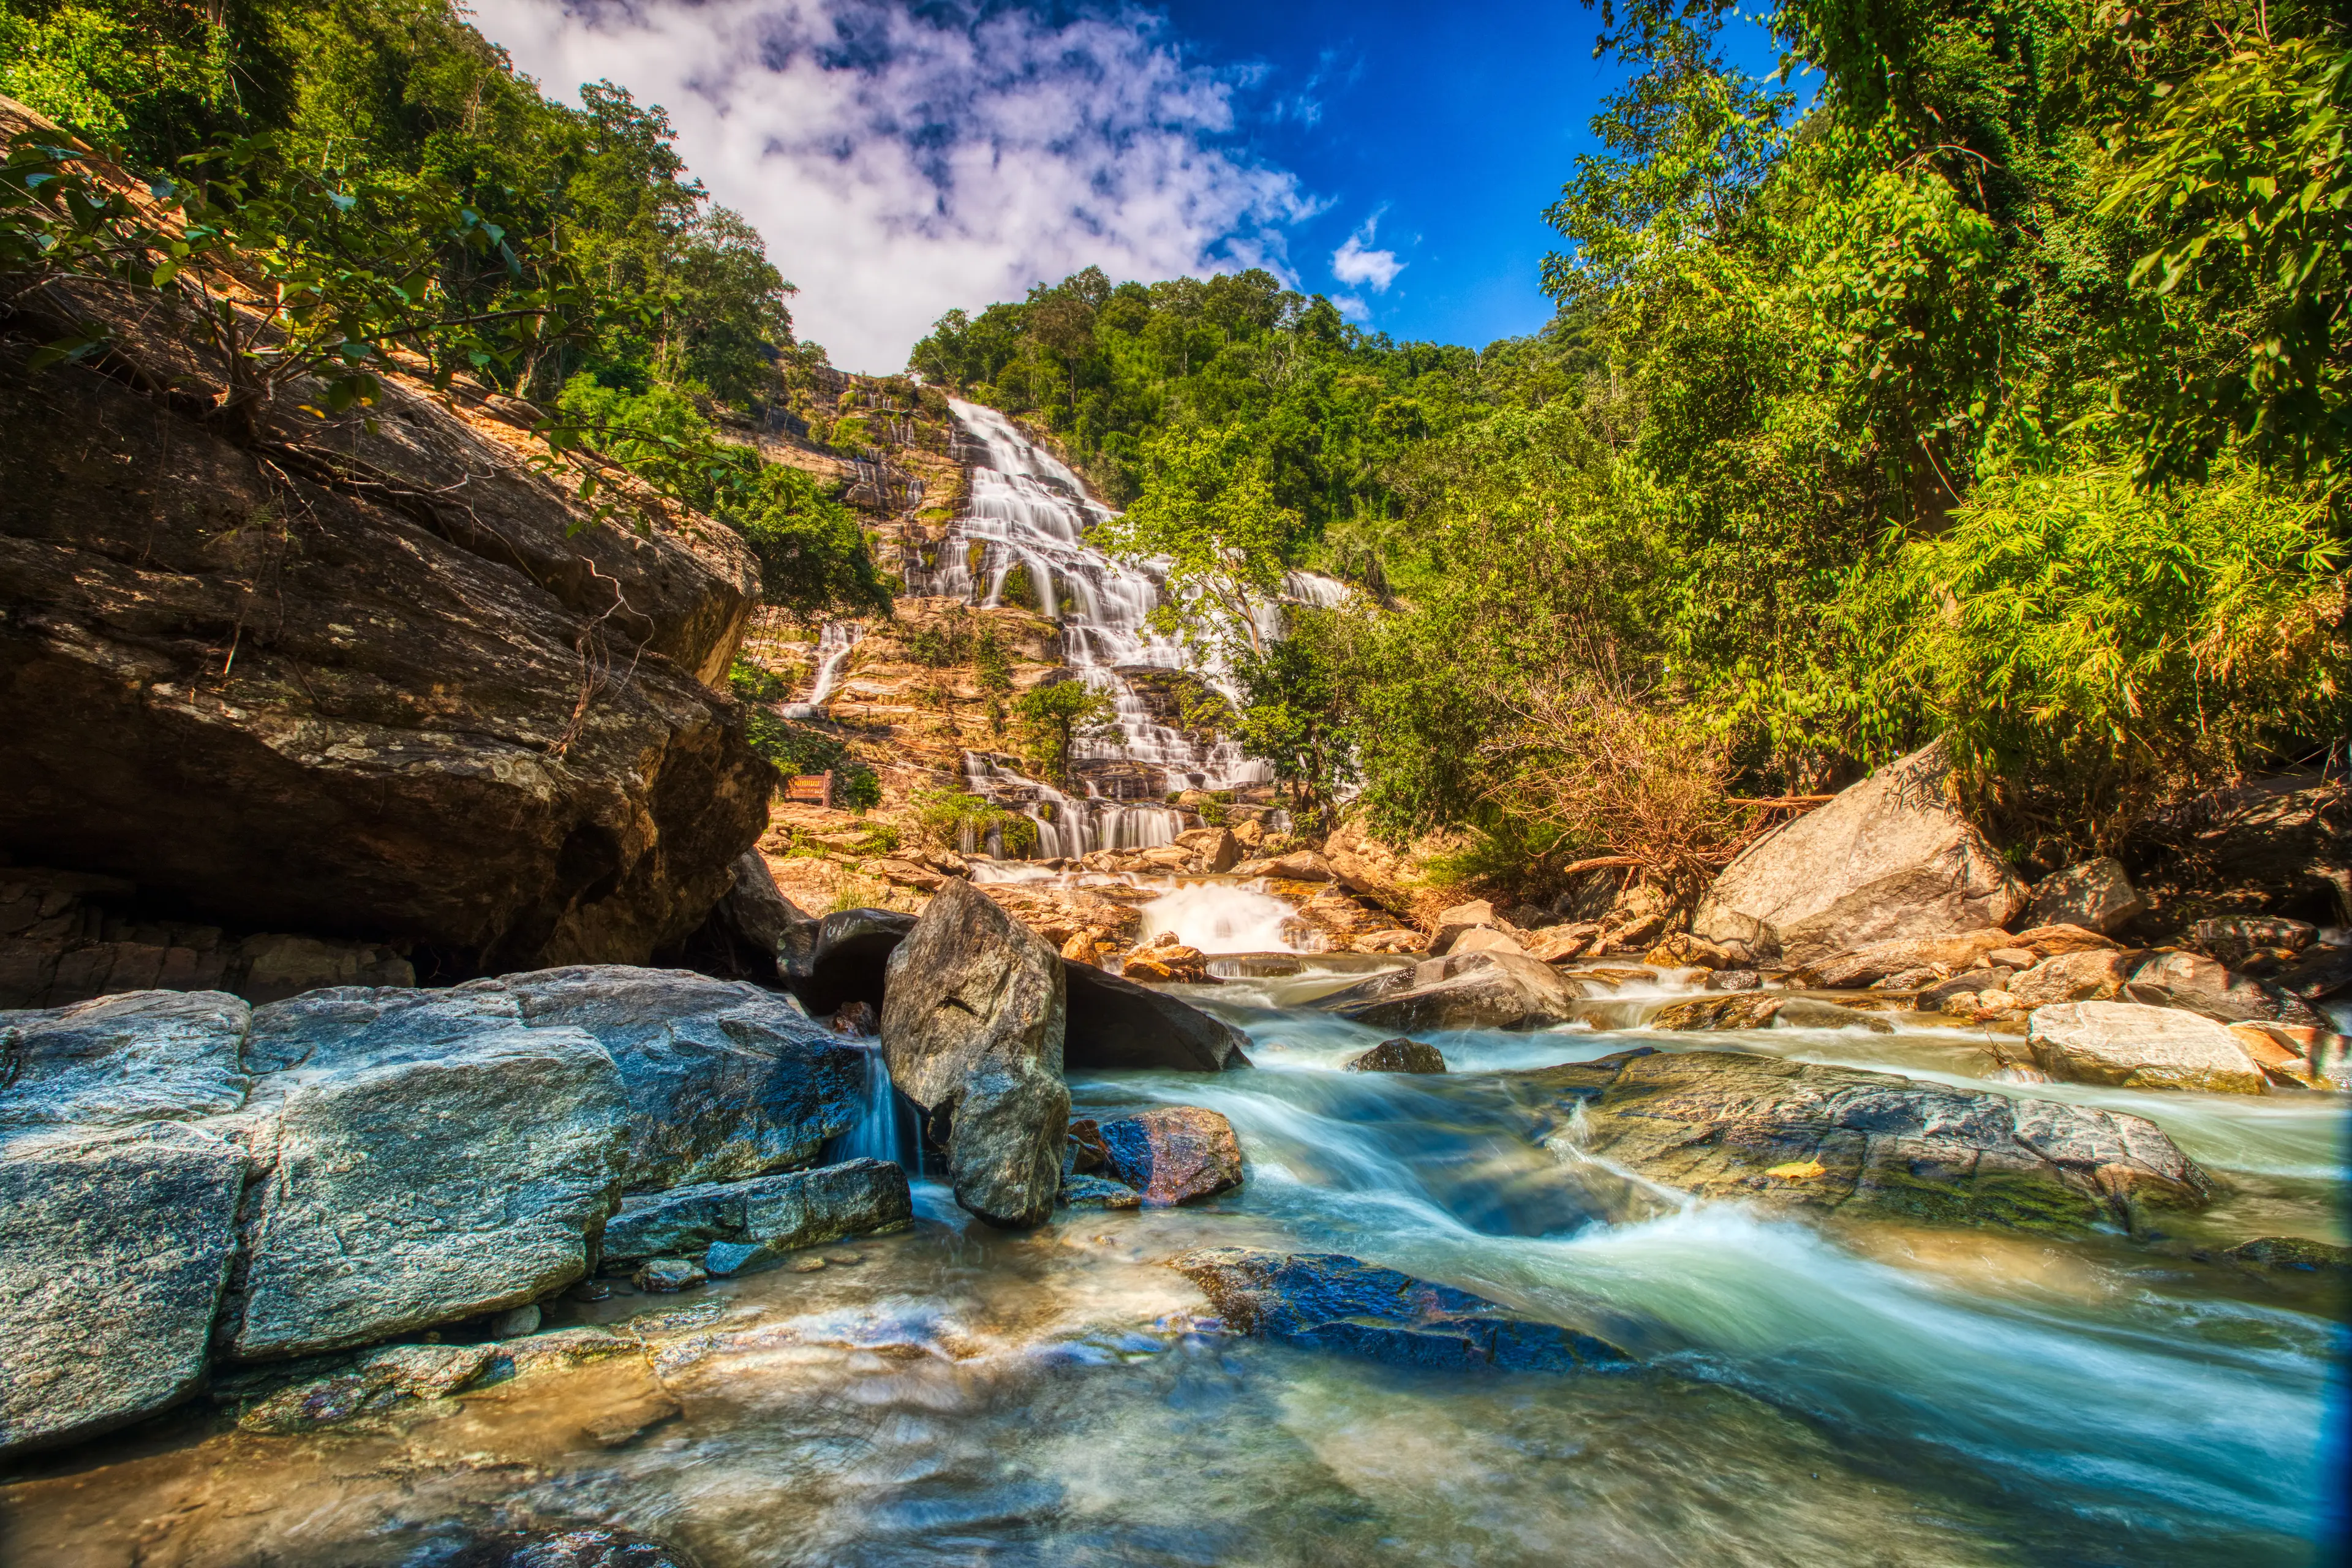 Mae Ya waterfall, Doi Inthanon National Park